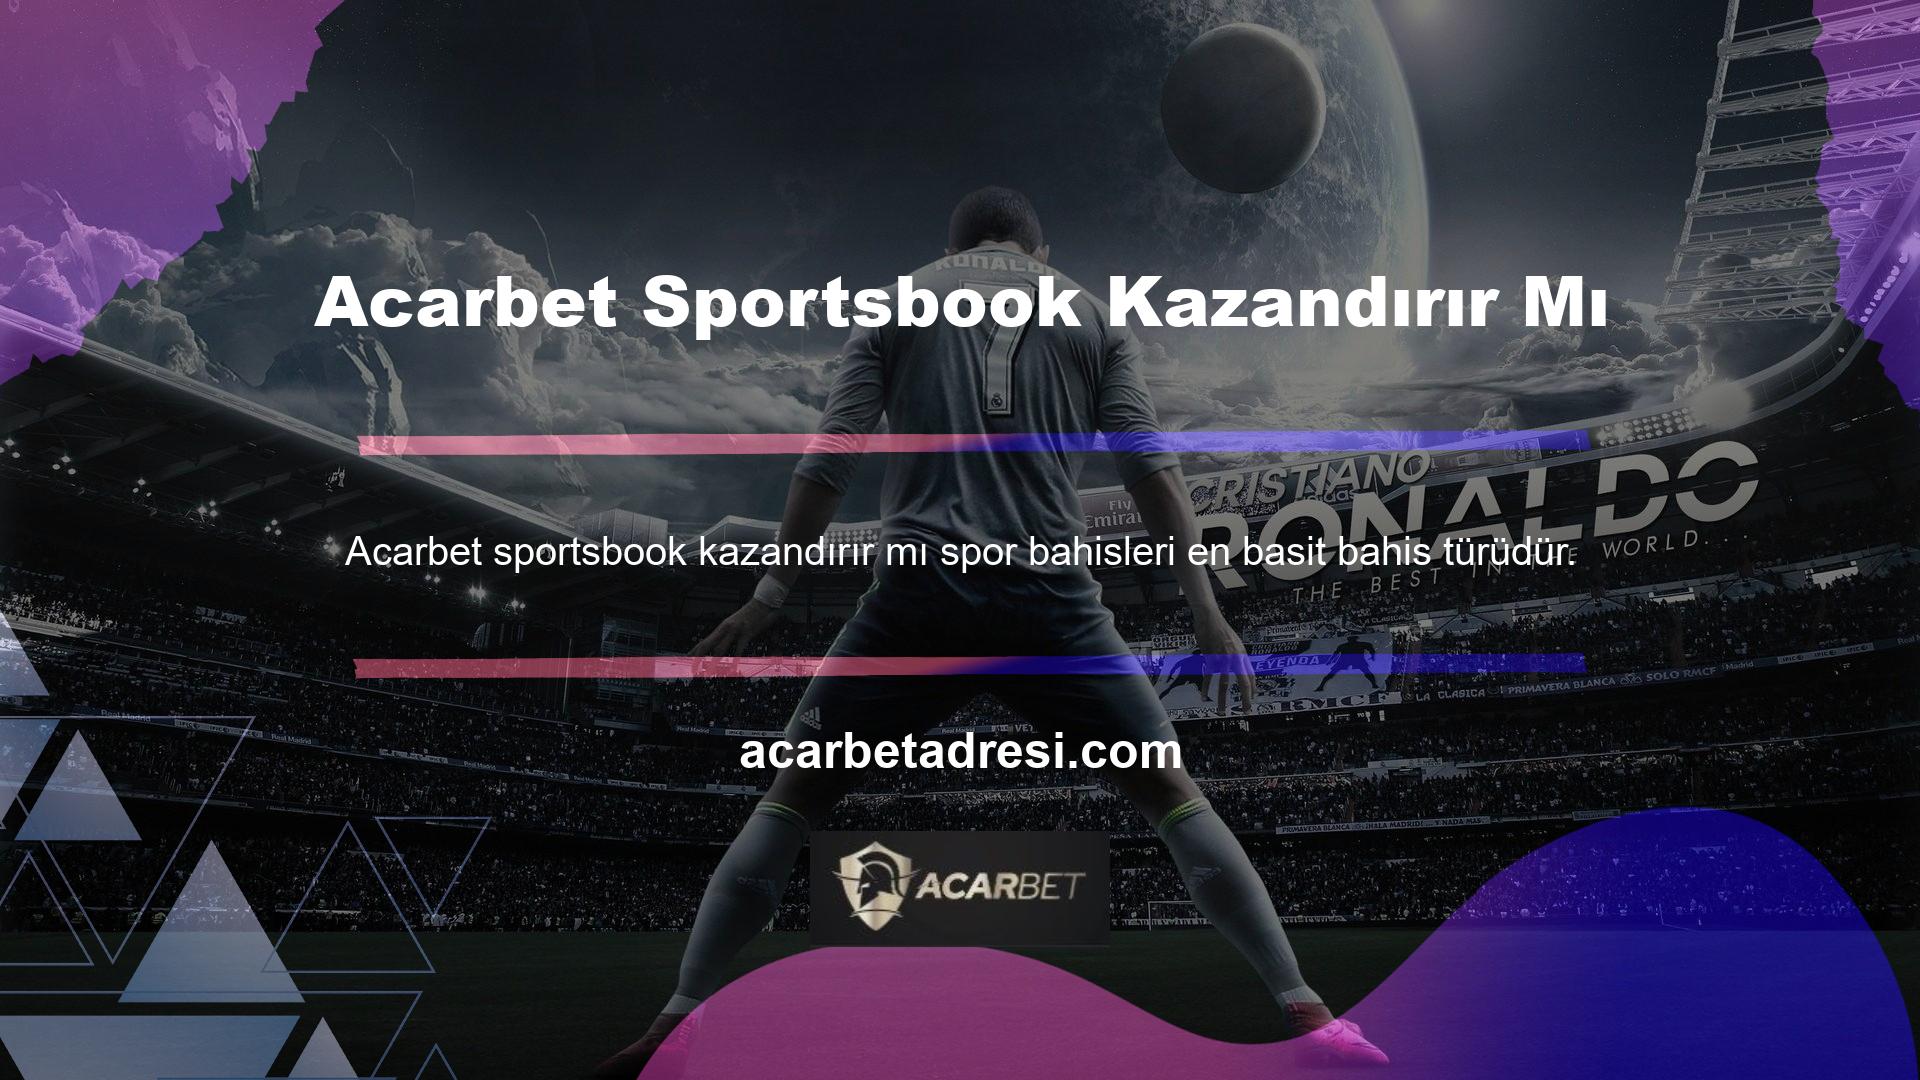 Acarbet web sitesi, spora biraz ilgi duyan bahisçiler için kolay bir kazanma şansı sunuyor